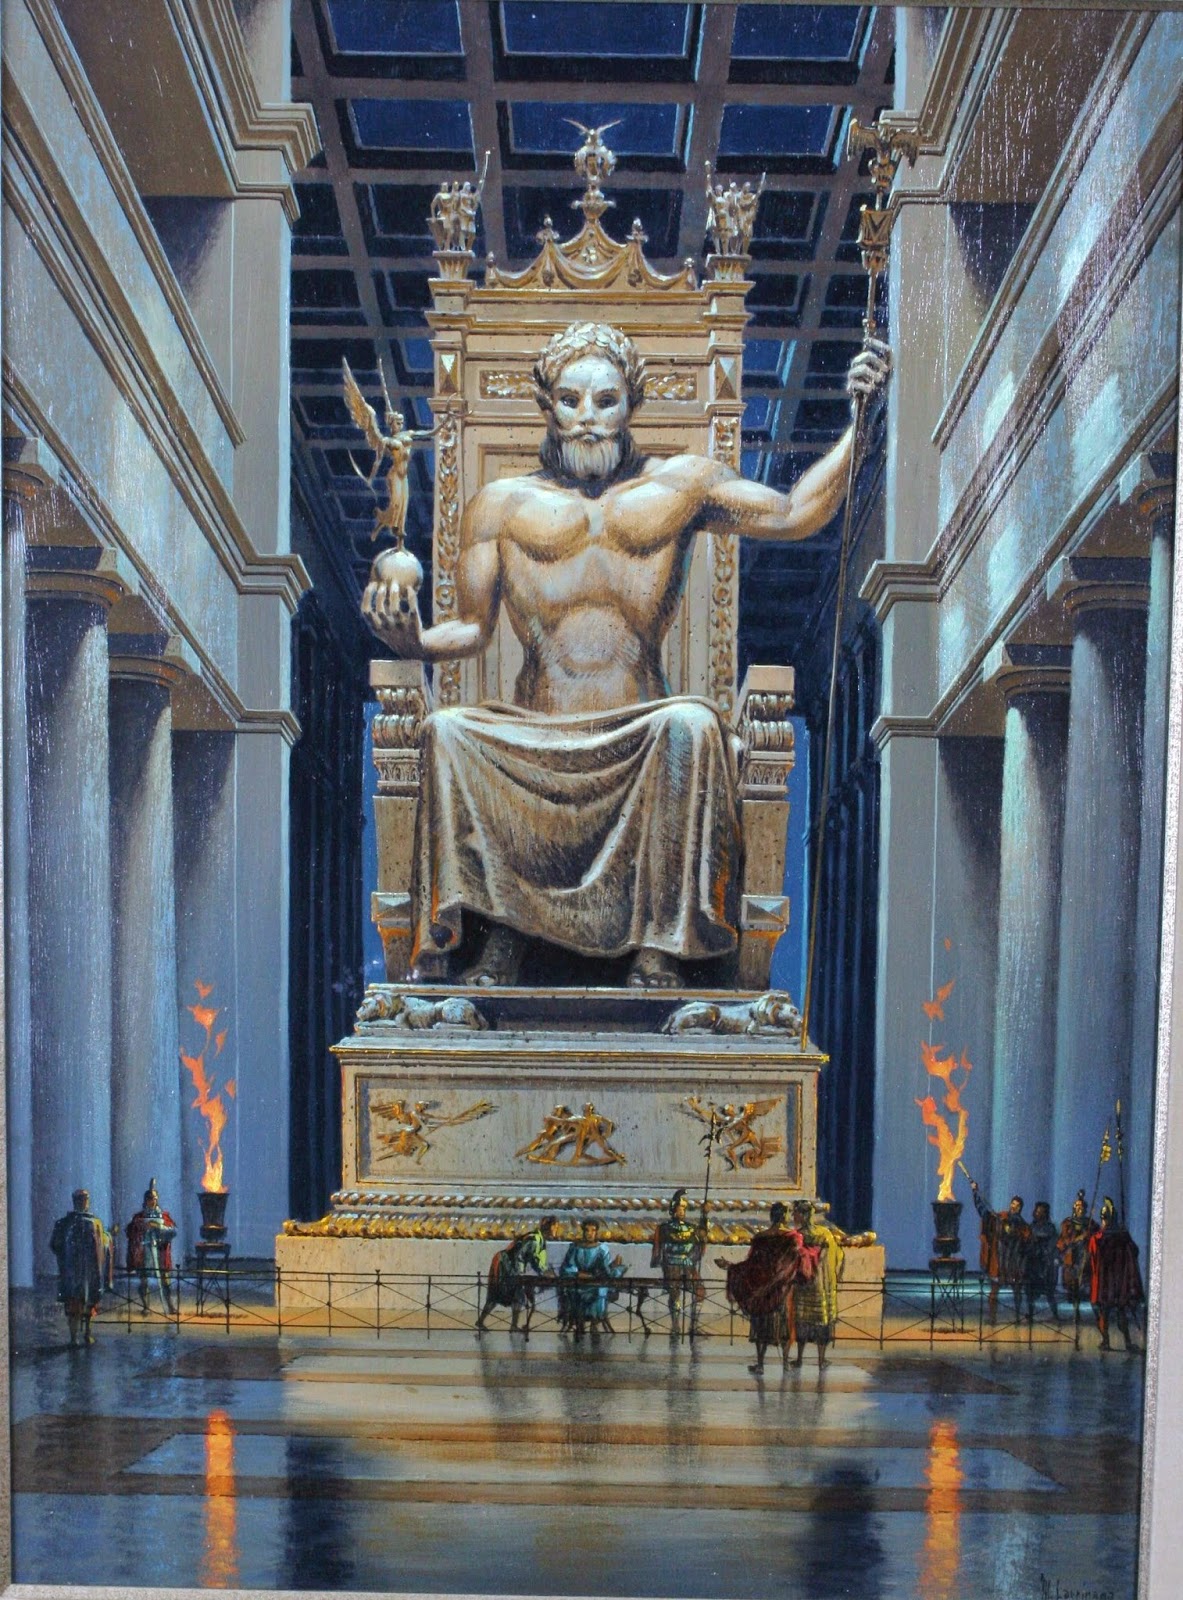 Seven Wonders of the World : Statue of Zeus